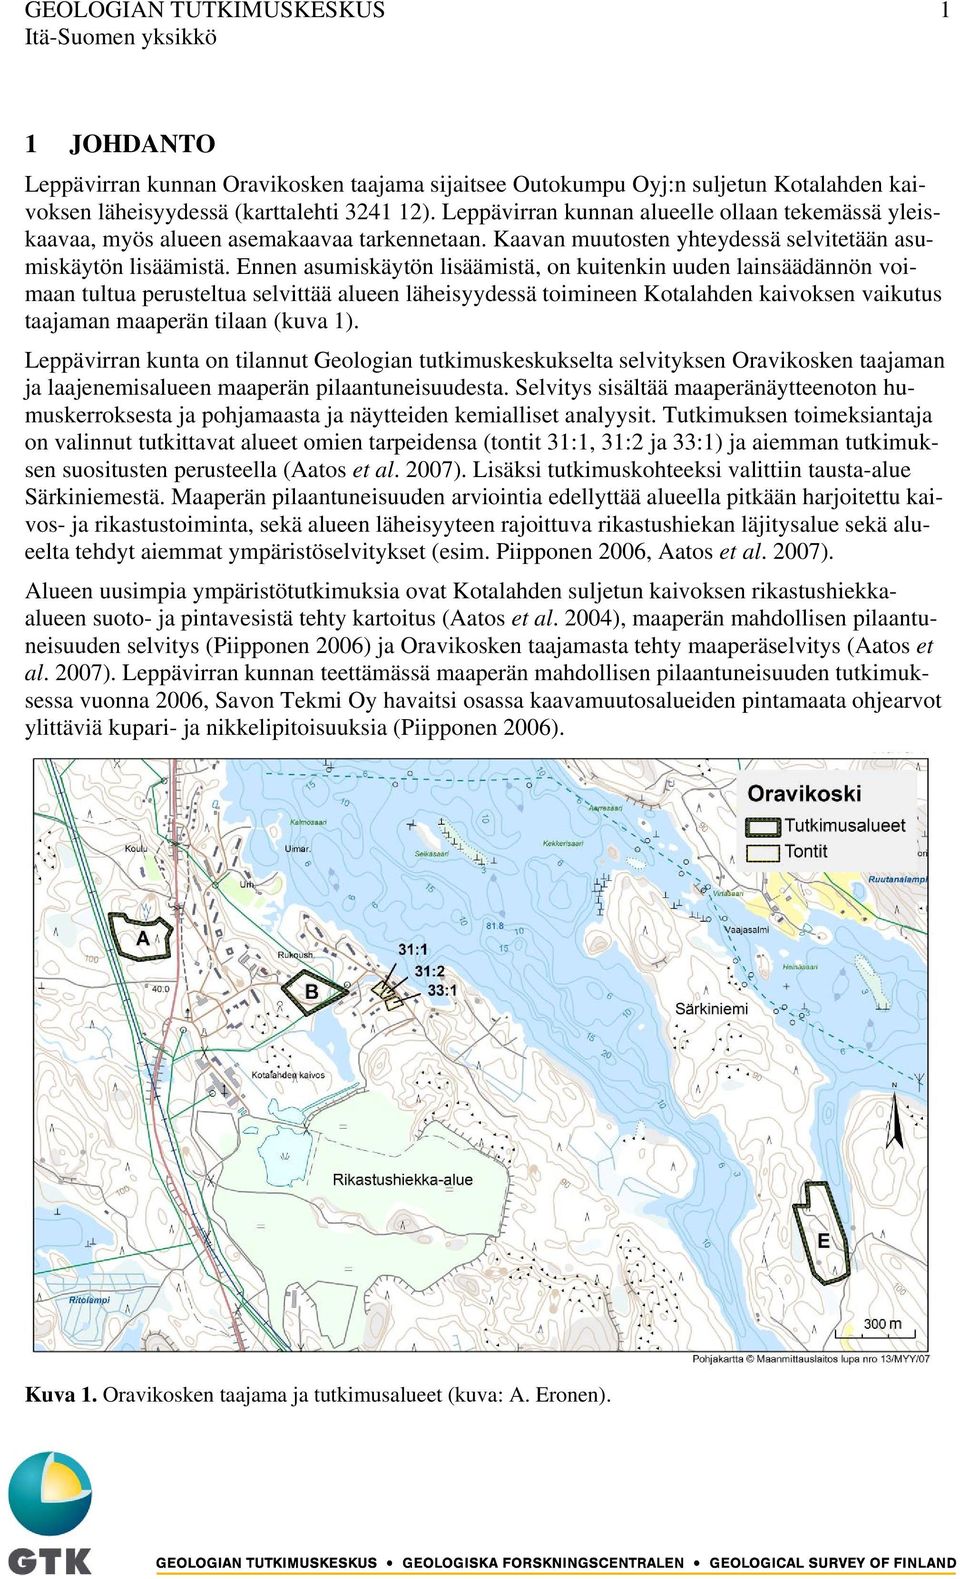 Ennen asumiskäytön lisäämistä, on kuitenkin uuden lainsäädännön voimaan tultua perusteltua selvittää alueen läheisyydessä toimineen Kotalahden kaivoksen vaikutus taajaman maaperän tilaan (kuva 1).